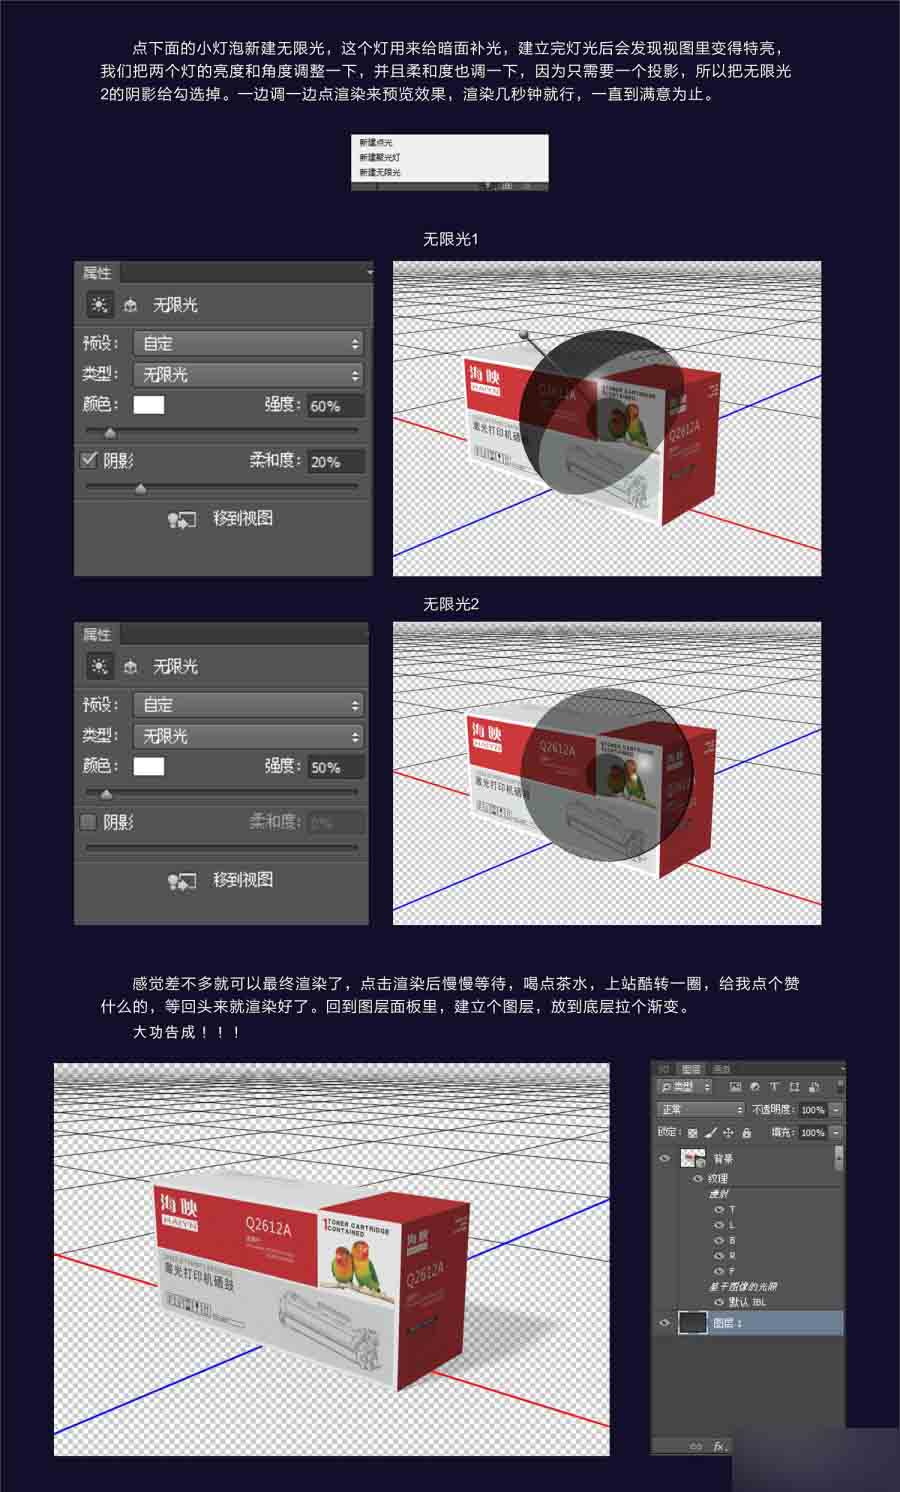 PhotoShop CC的3D功能制作一款产品包装盒立体效果